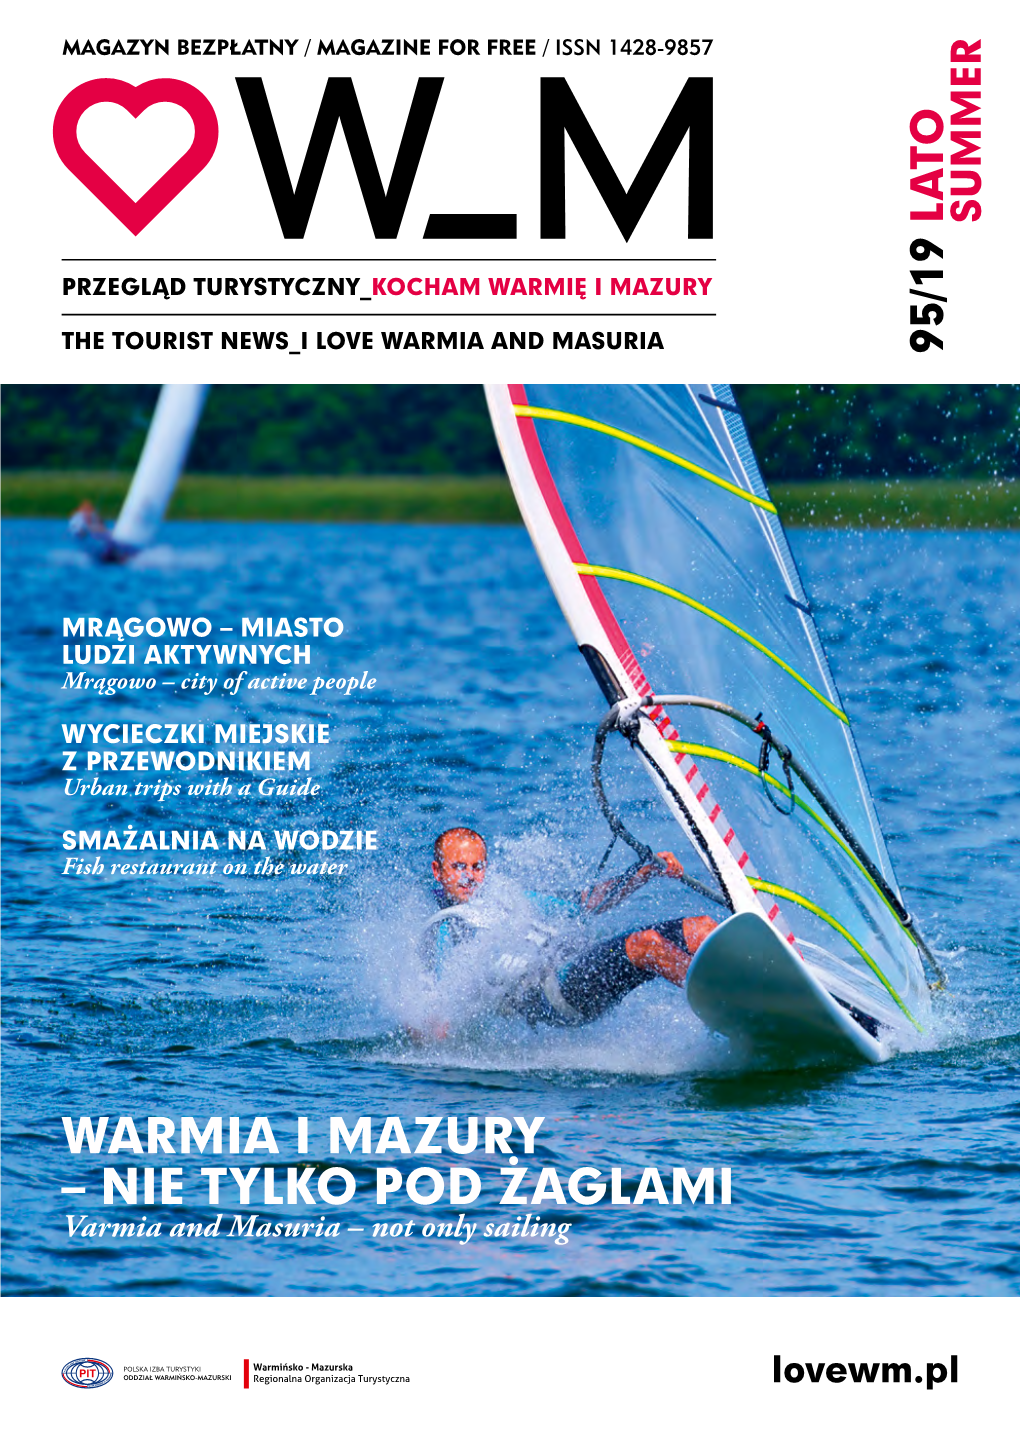 WARMIA I MAZURY – NIE TYLKO POD ŻAGLAMI Varmia and Masuria – Not Only Sailing